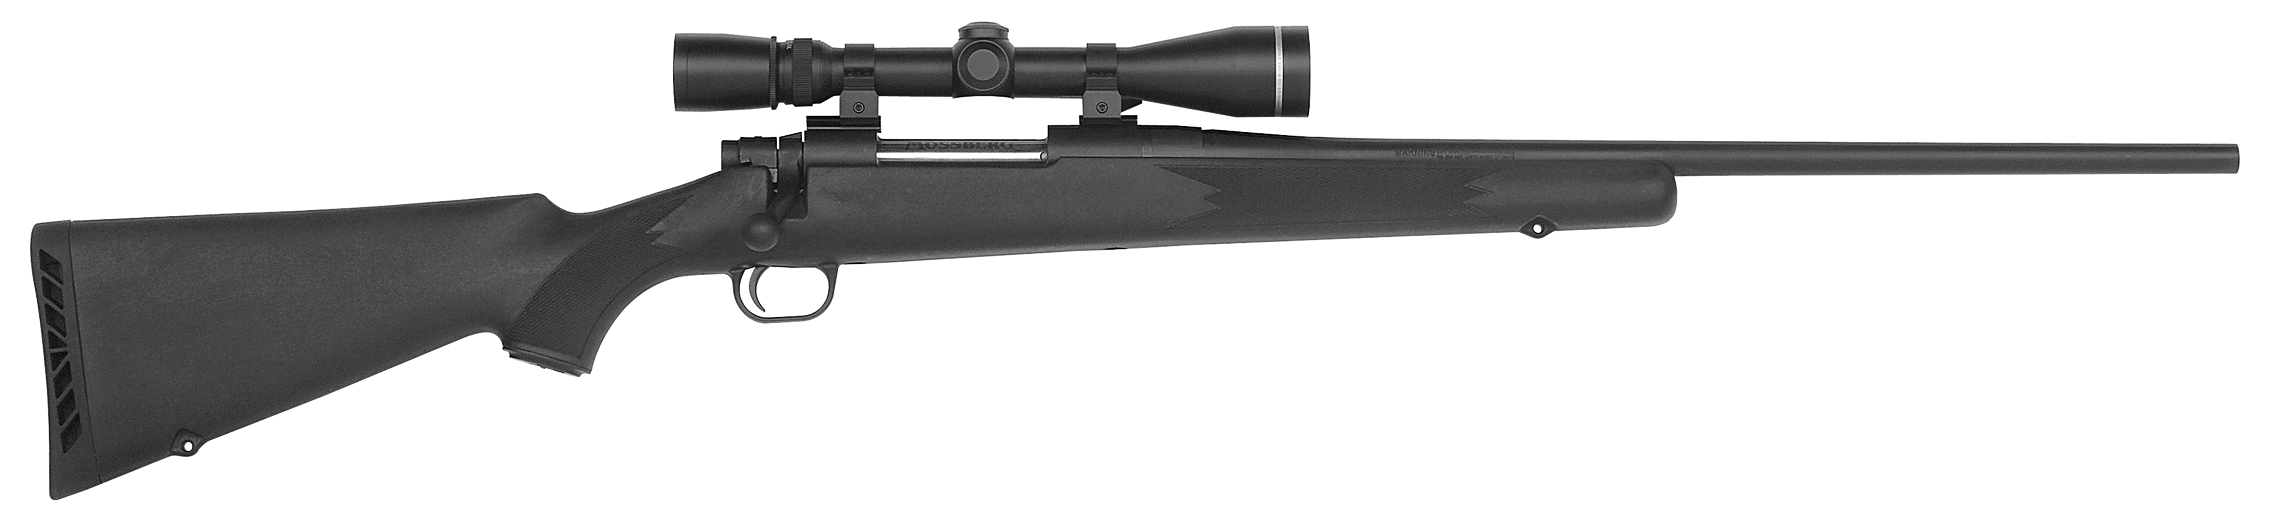 Model 100 ATR (All-Terrain Rifle)